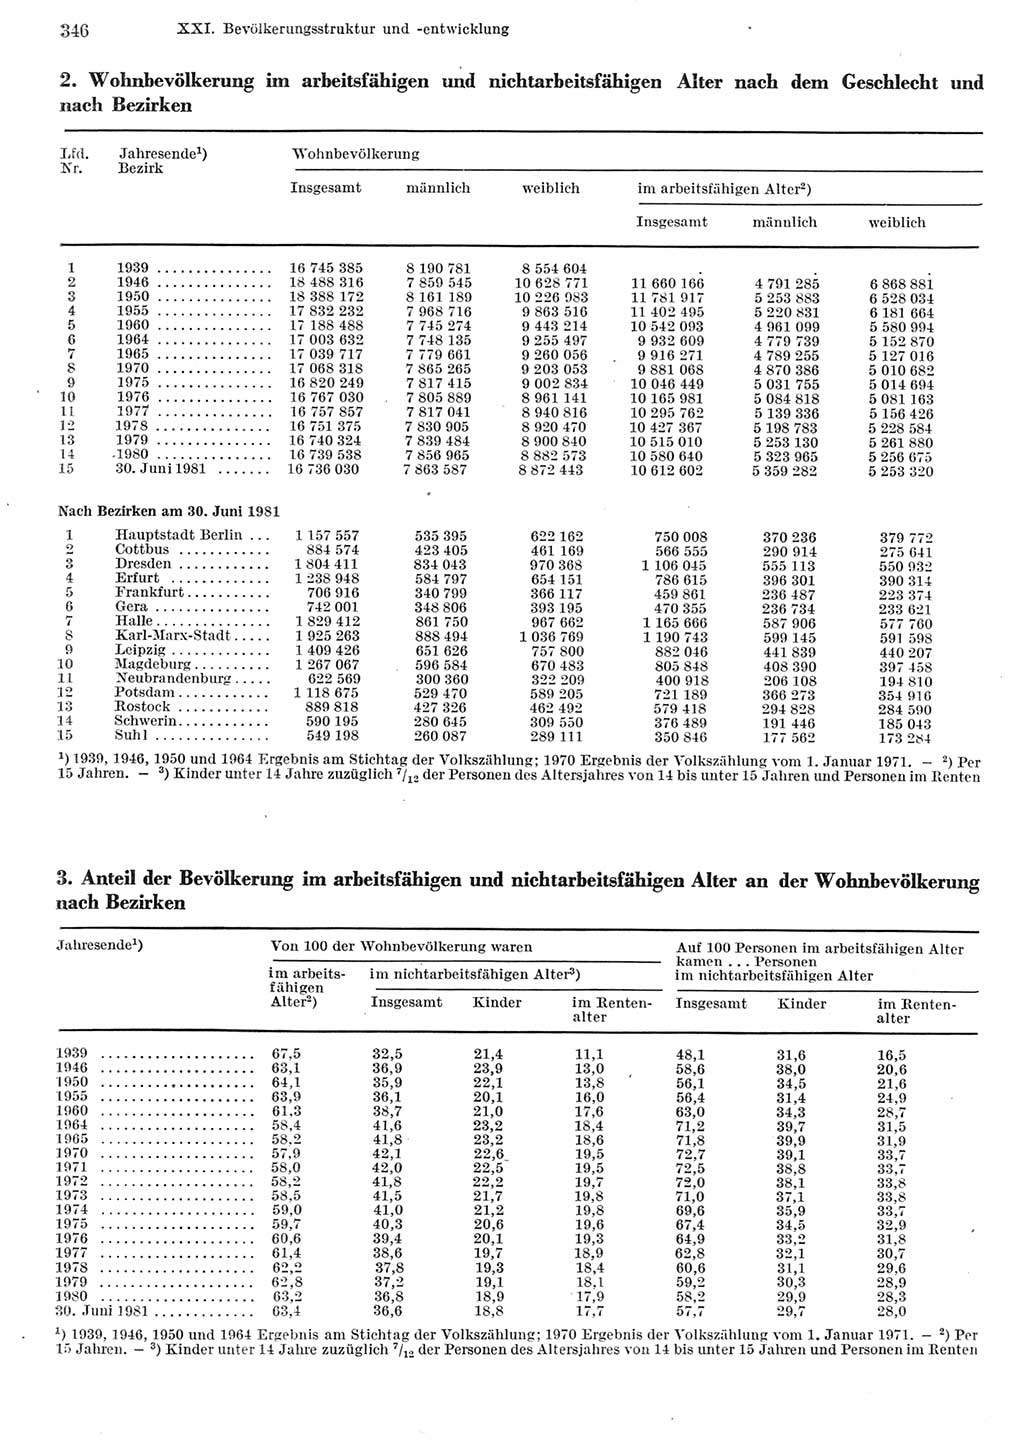 Statistisches Jahrbuch der Deutschen Demokratischen Republik (DDR) 1982, Seite 346 (Stat. Jb. DDR 1982, S. 346)